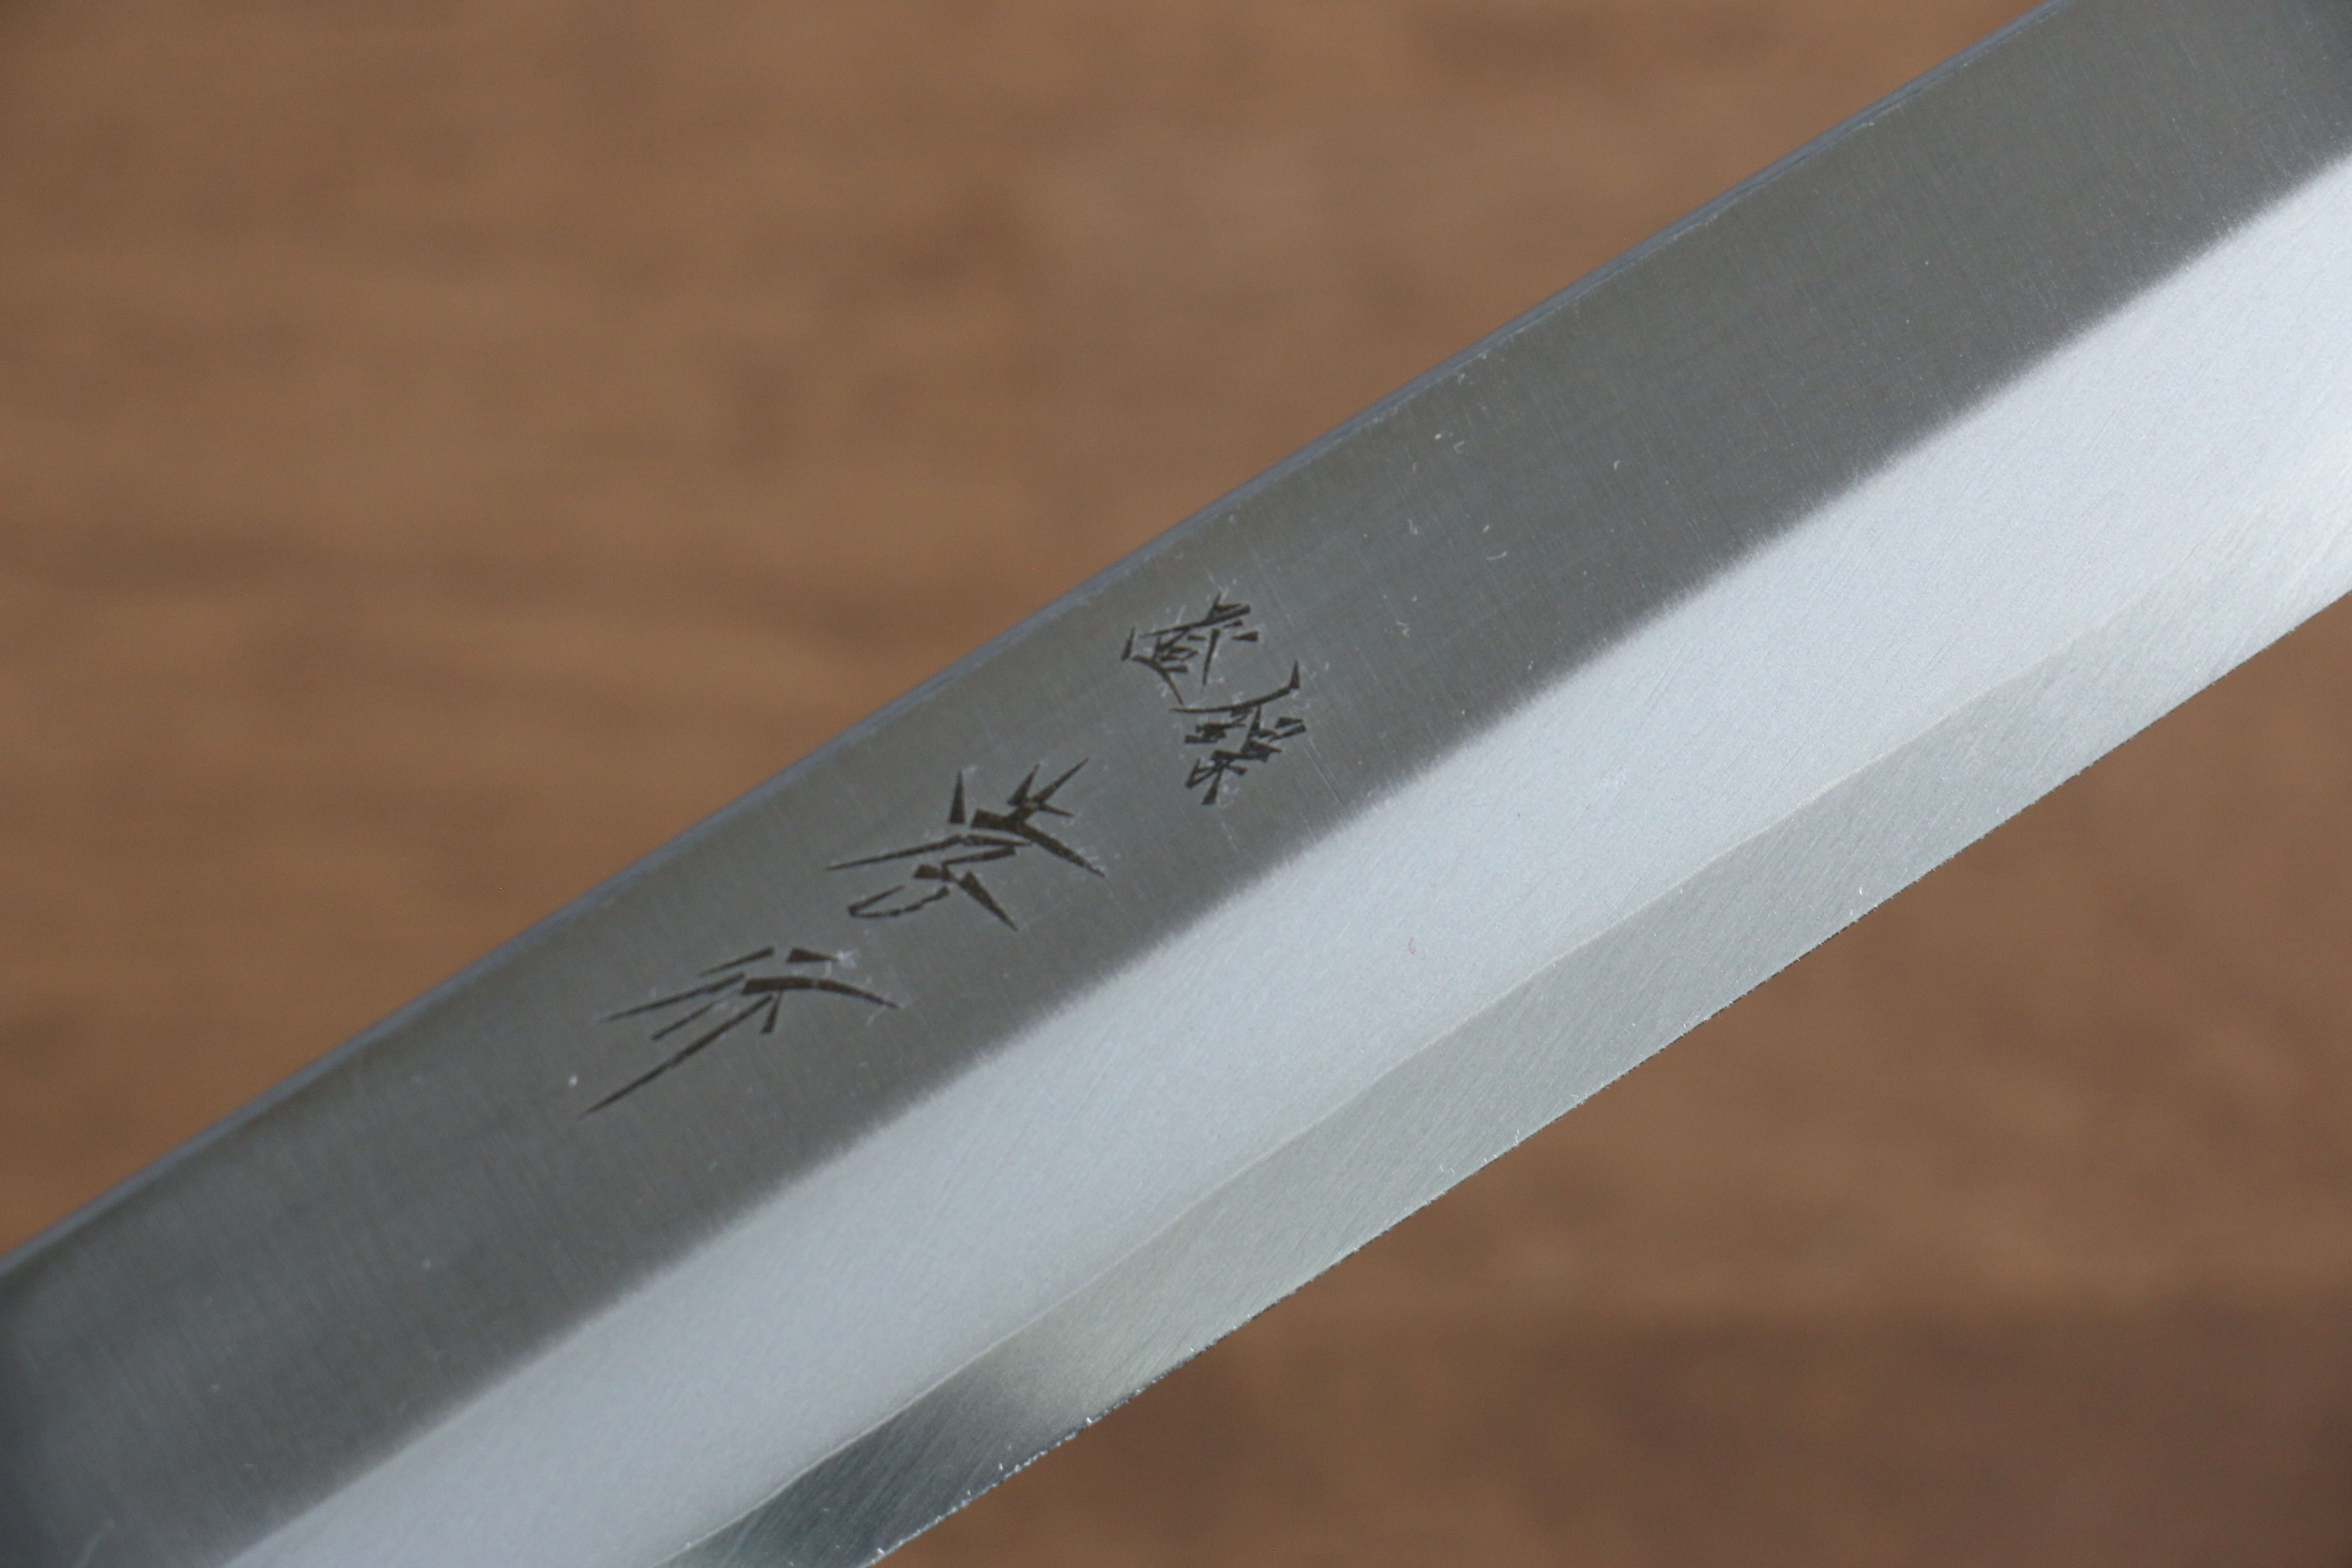 Sakai Takayuki Inox Pro V-2 AUS8 Yanagiba Japanese Knife 210mm - Japanny - Best Japanese Knife